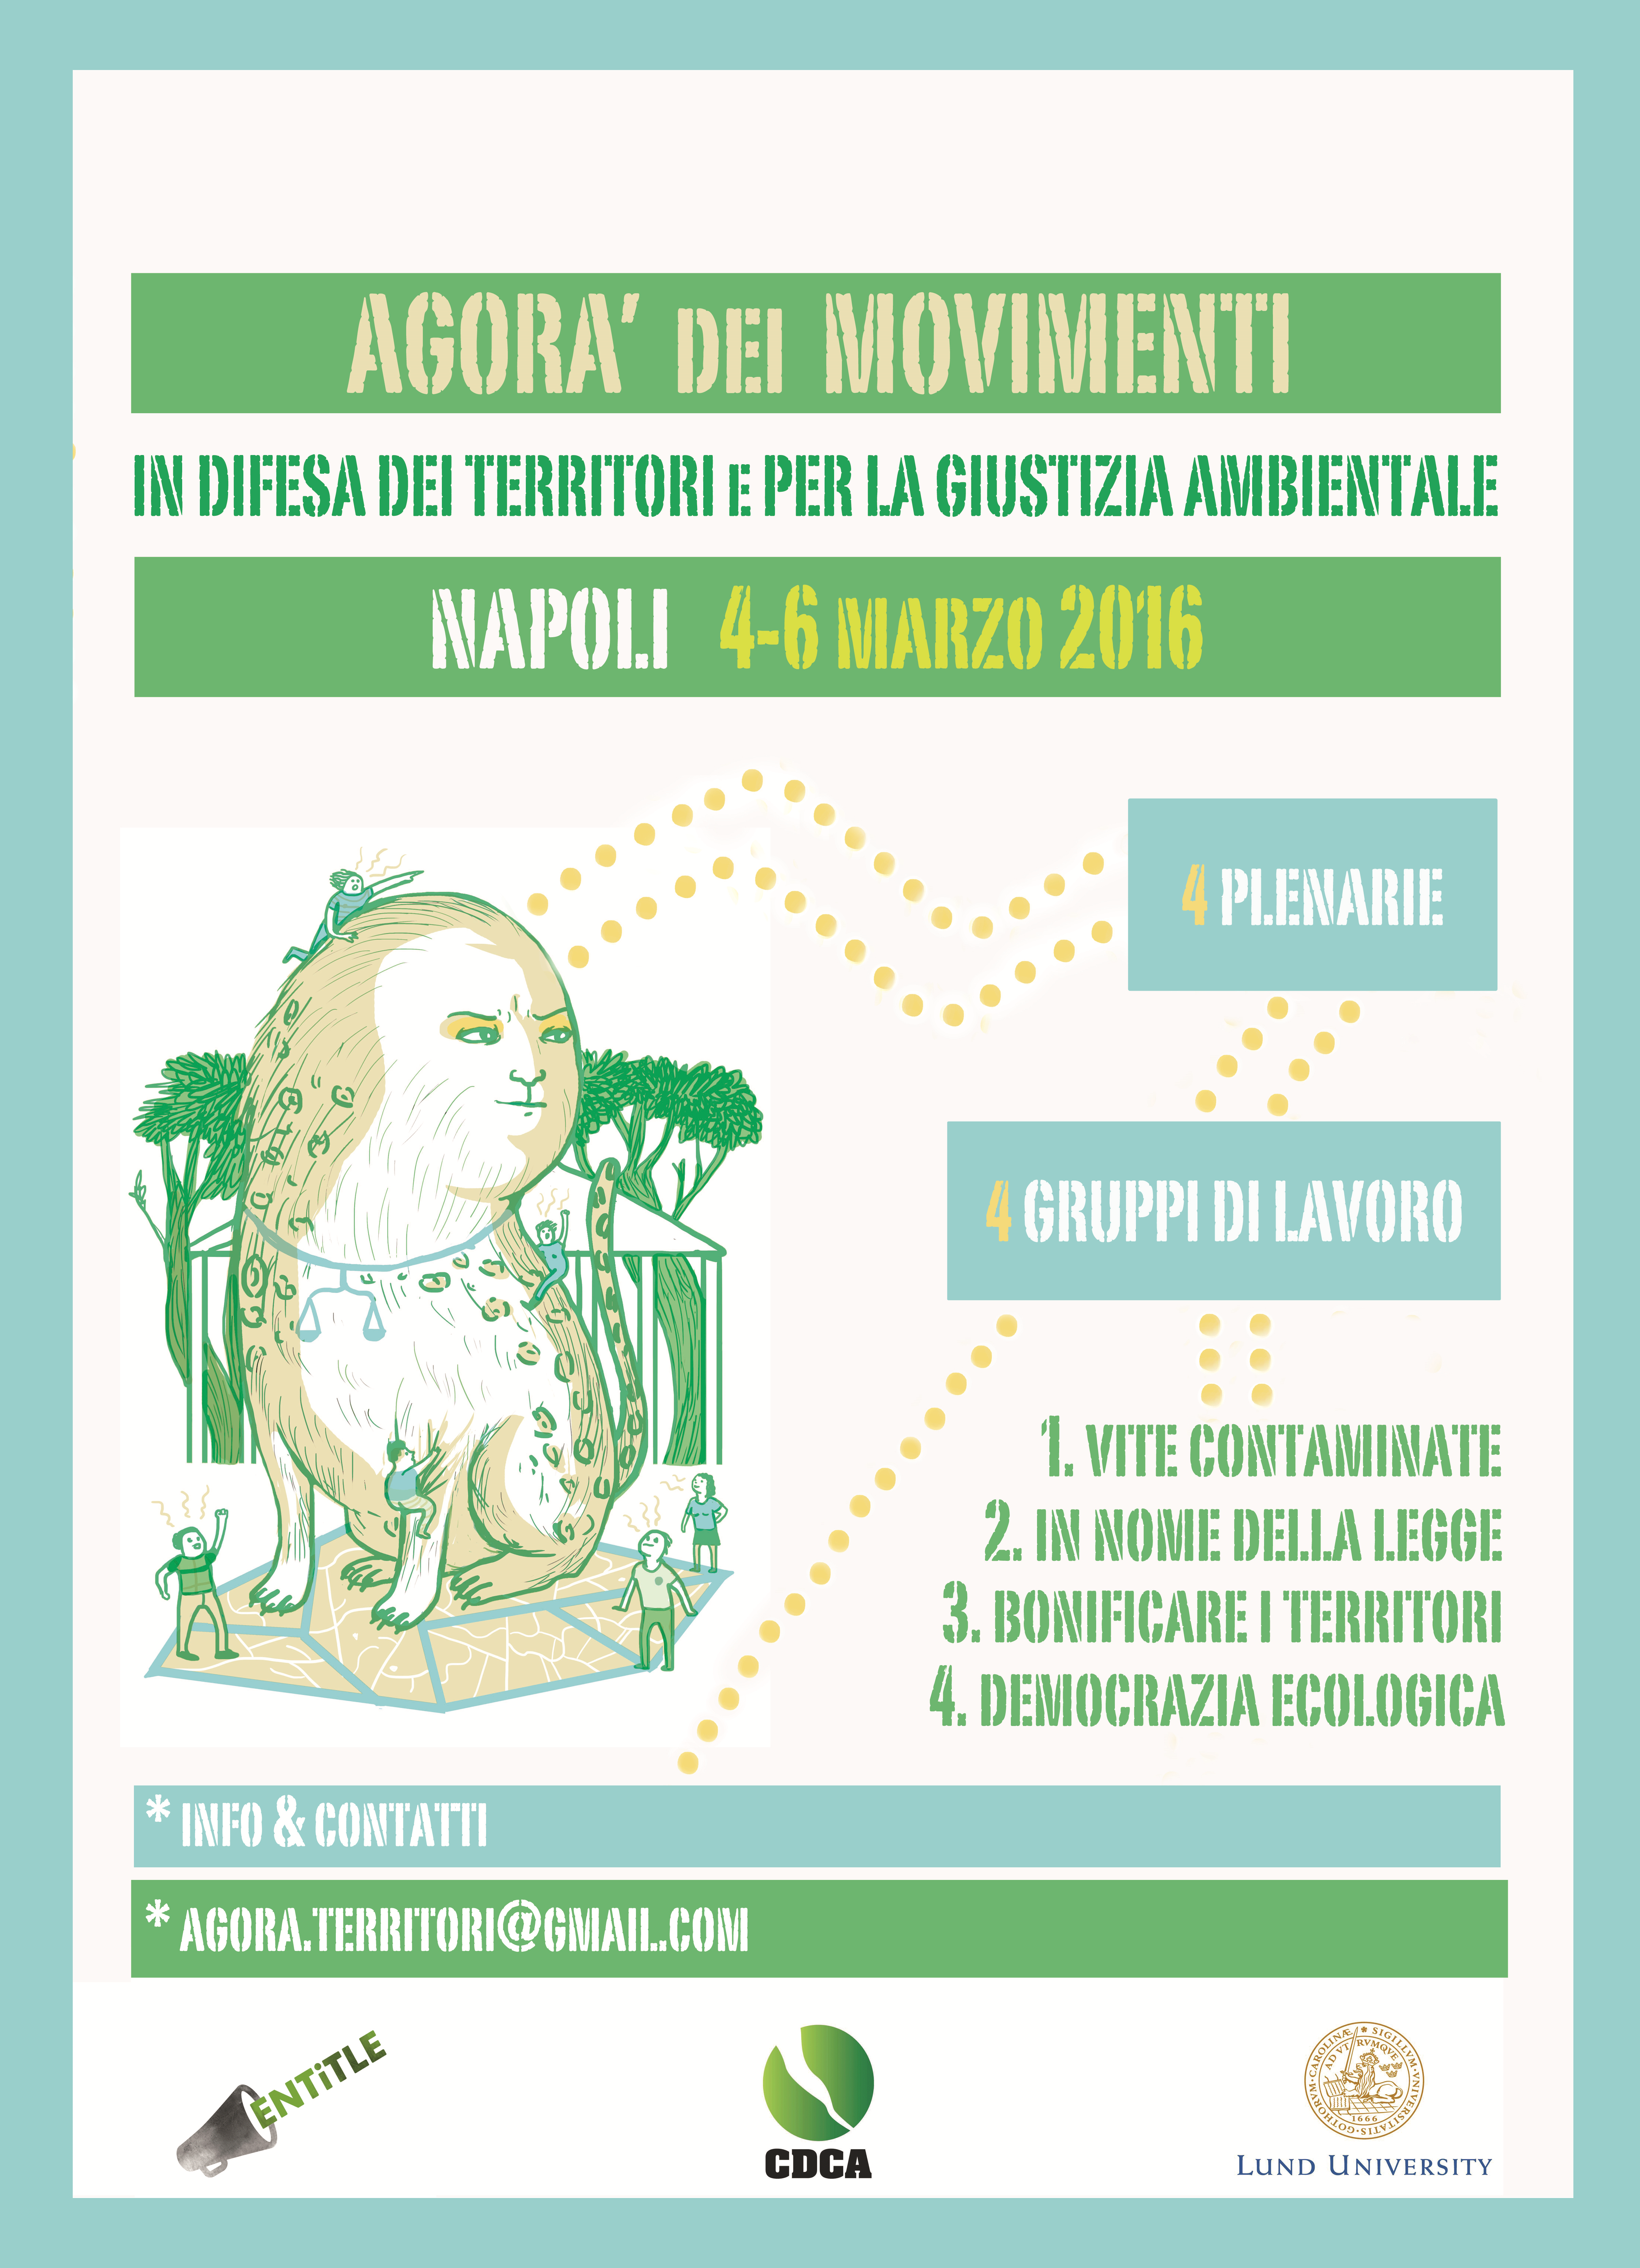 Agorà dei movimenti in difesa dei territori e per la giustizia ambientale, Napoli 4-6 marzo 2016